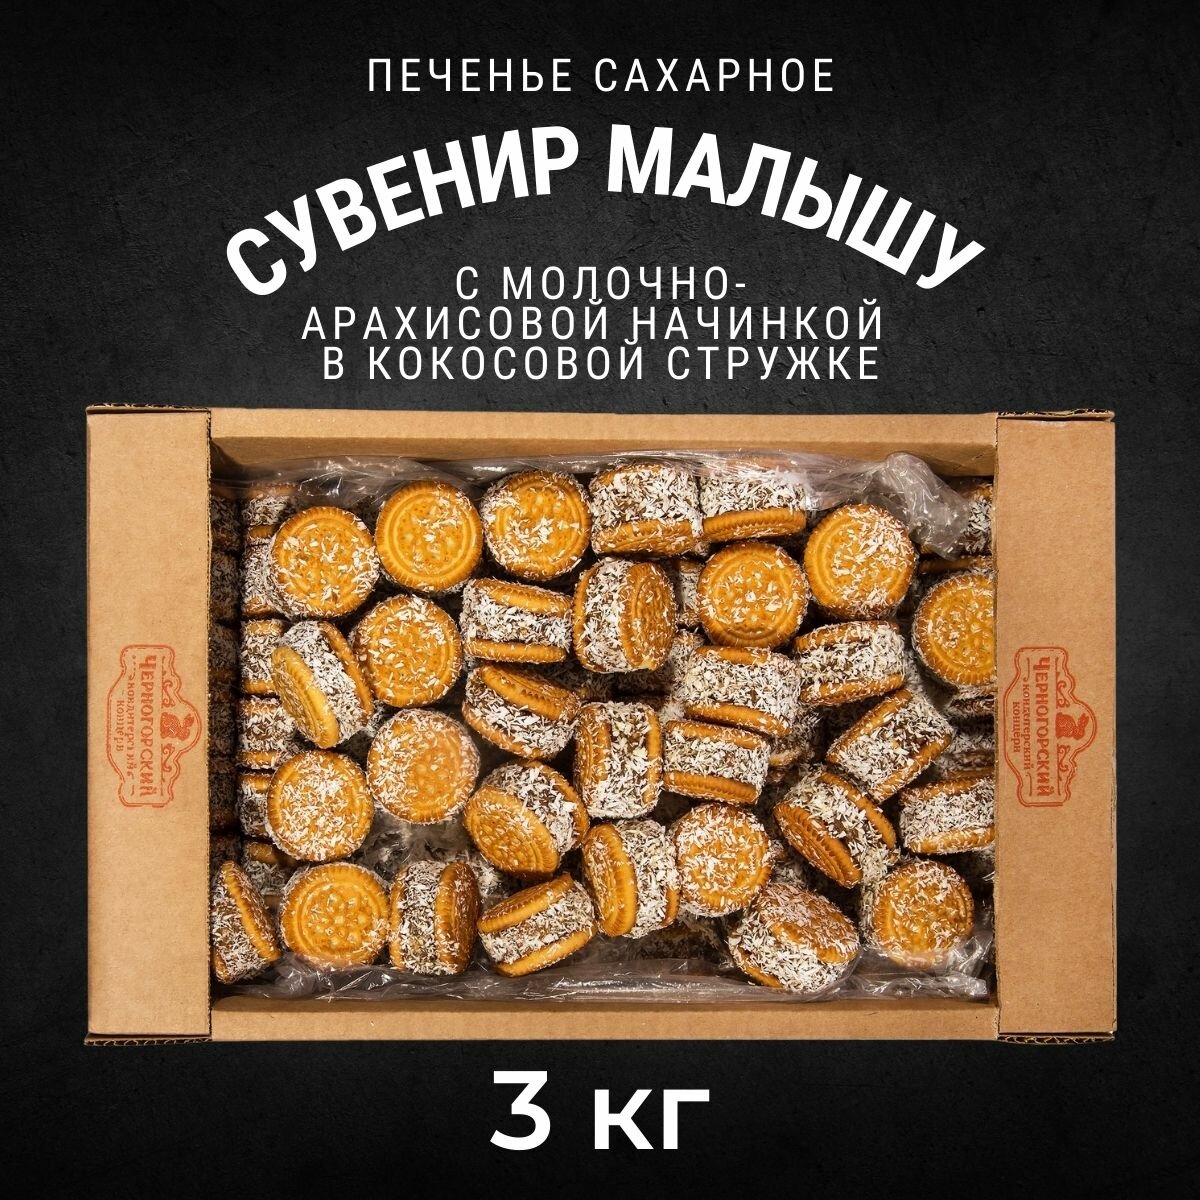 Печенье сахарное сувенир малышу с начинкой со вкусом арахиса и кокоса 3 кг , Черногорский